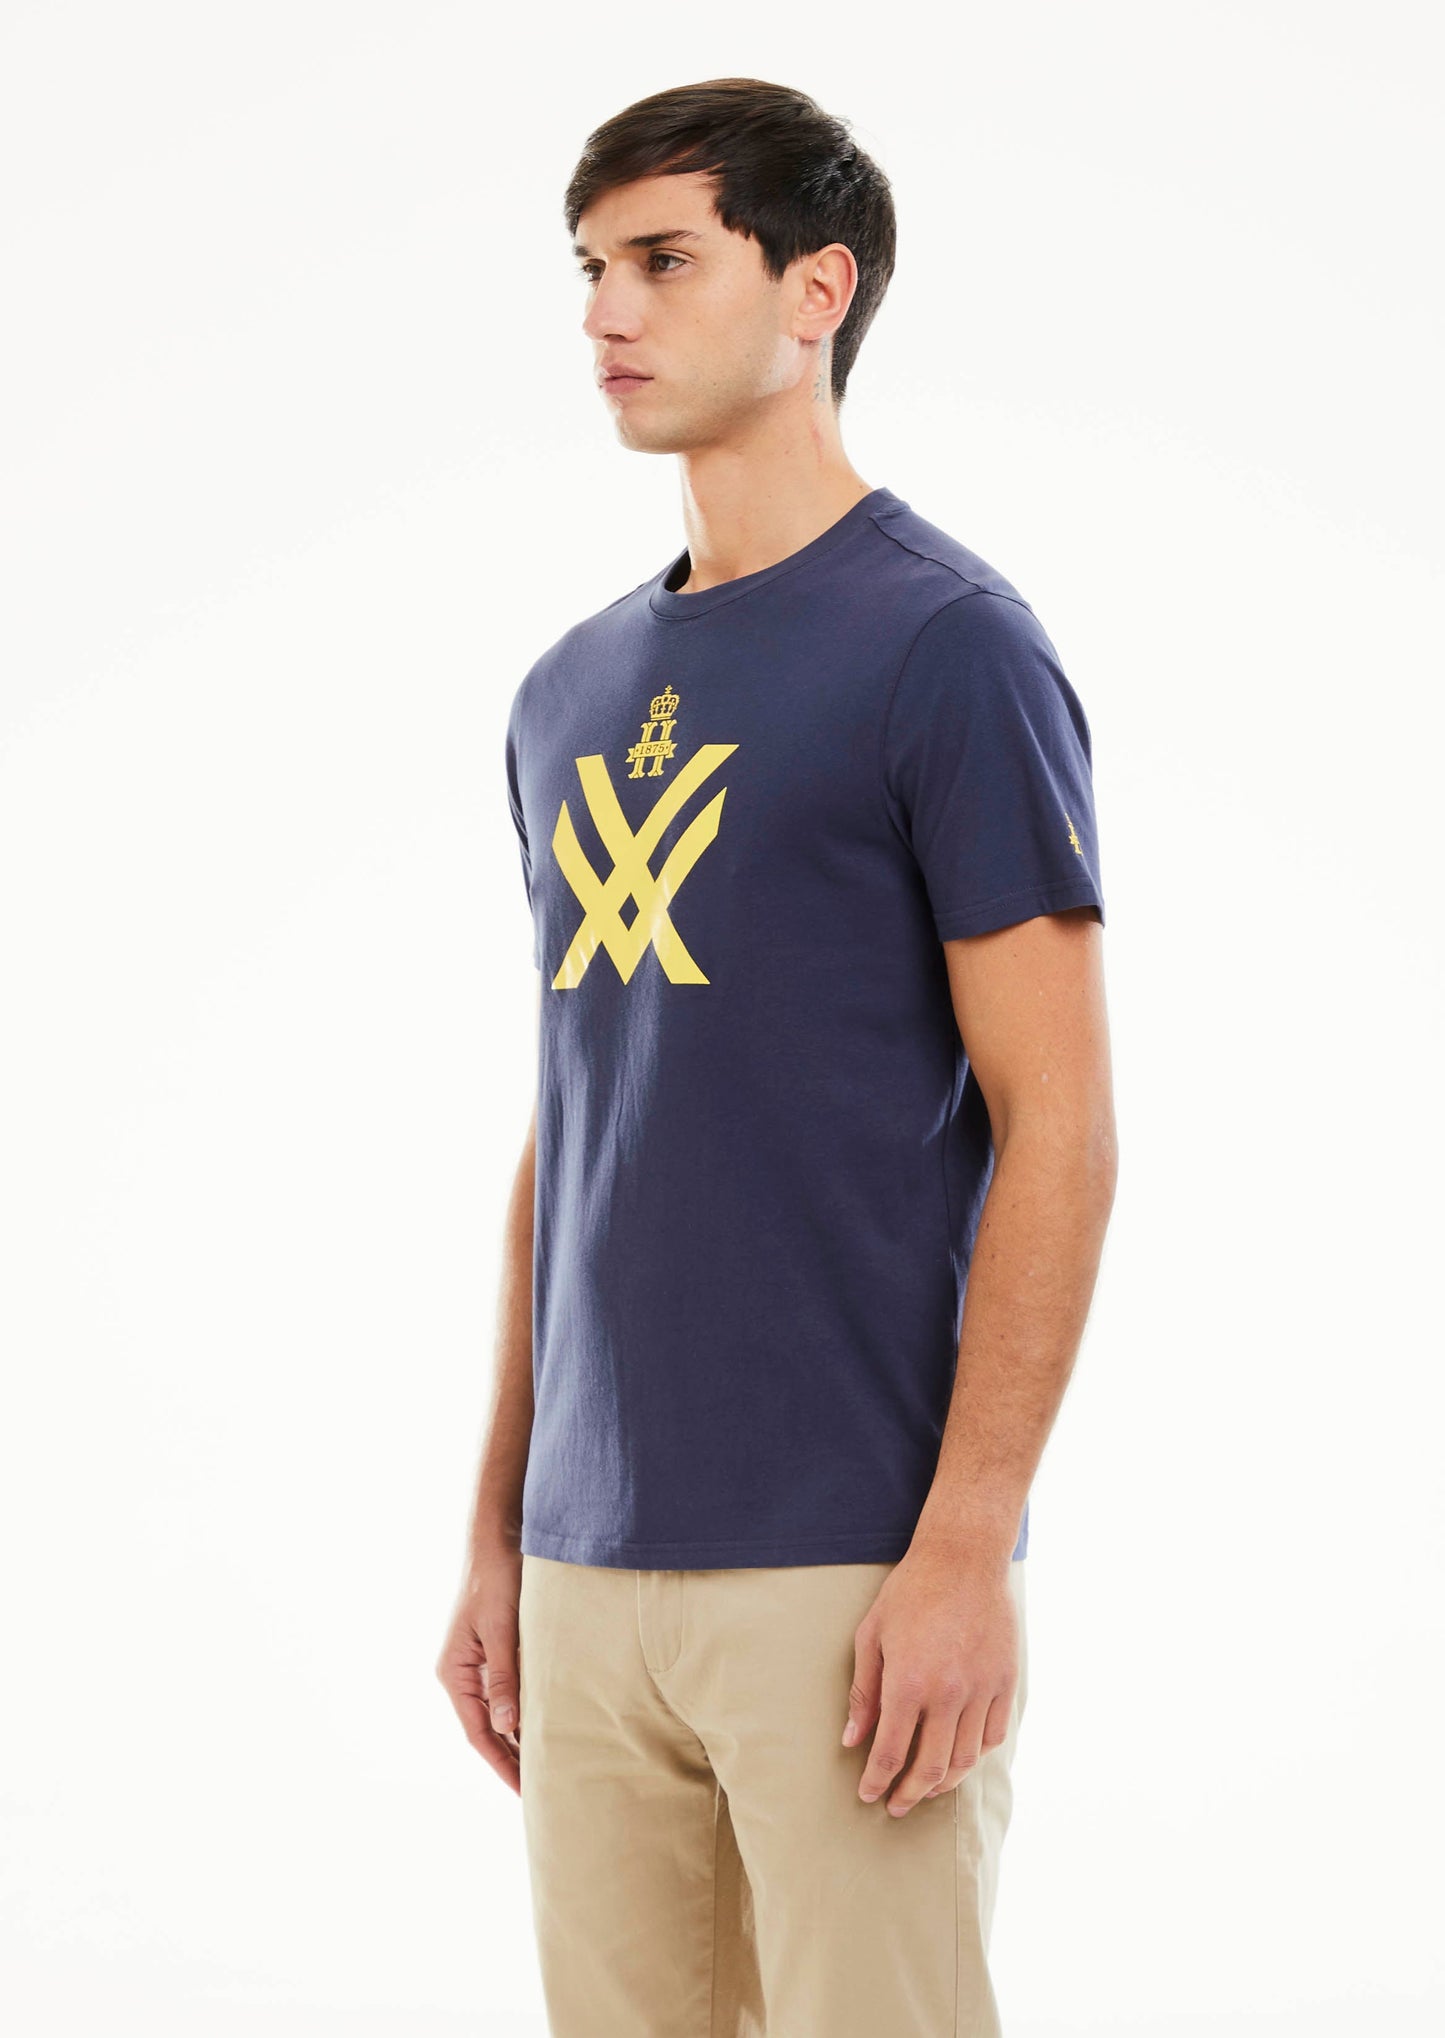 XV Printed T-shirt - Navy